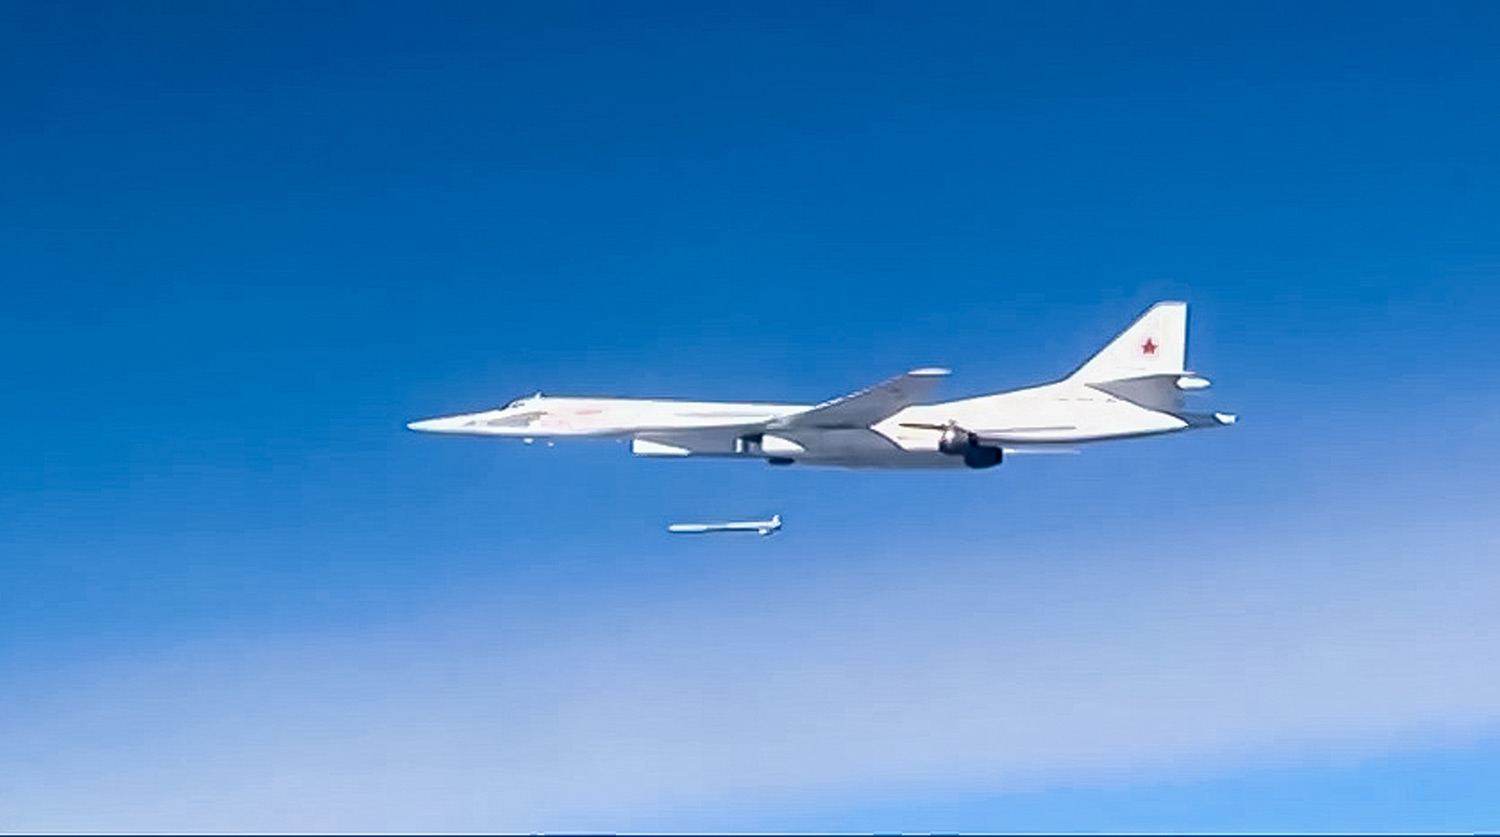 Российский межконтинентальный ракетоносец Ту-160М выполняет пуск неядерных крылатых ракет Х-101 по базам боевиков в Сирии 17 ноября 2015 г.